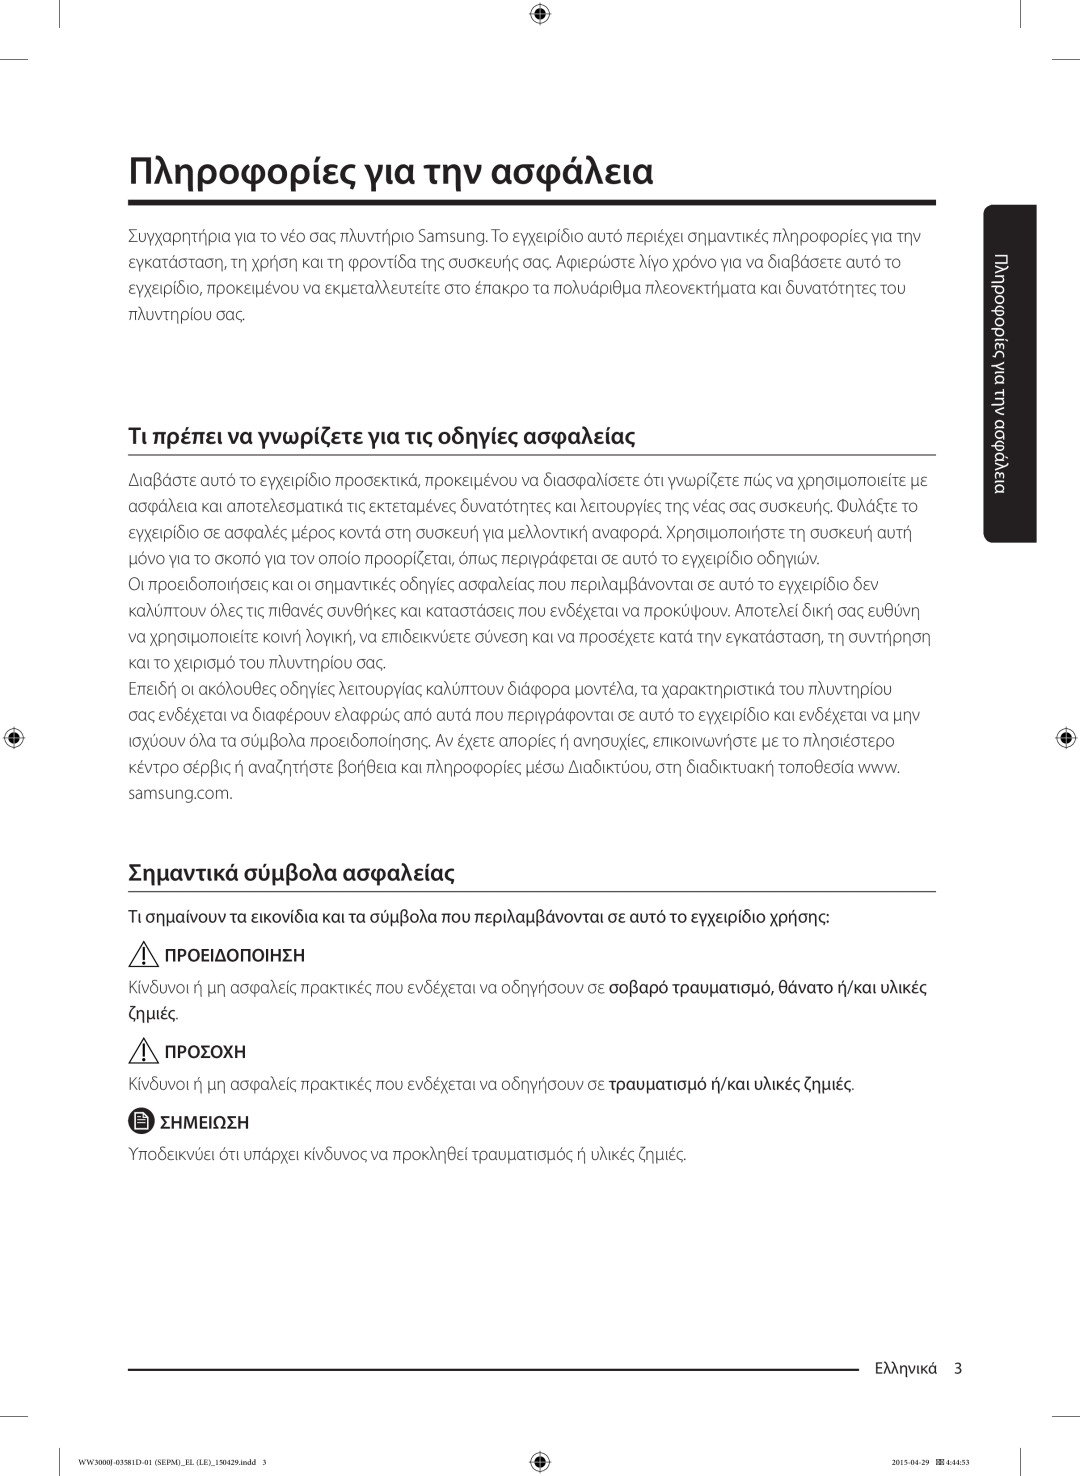 Samsung WF60F4E0N2W/LE manual Πληροφορίες για την ασφάλεια, Τι πρέπει να γνωρίζετε για τις οδηγίες ασφαλείας, Προειδοποιηση 